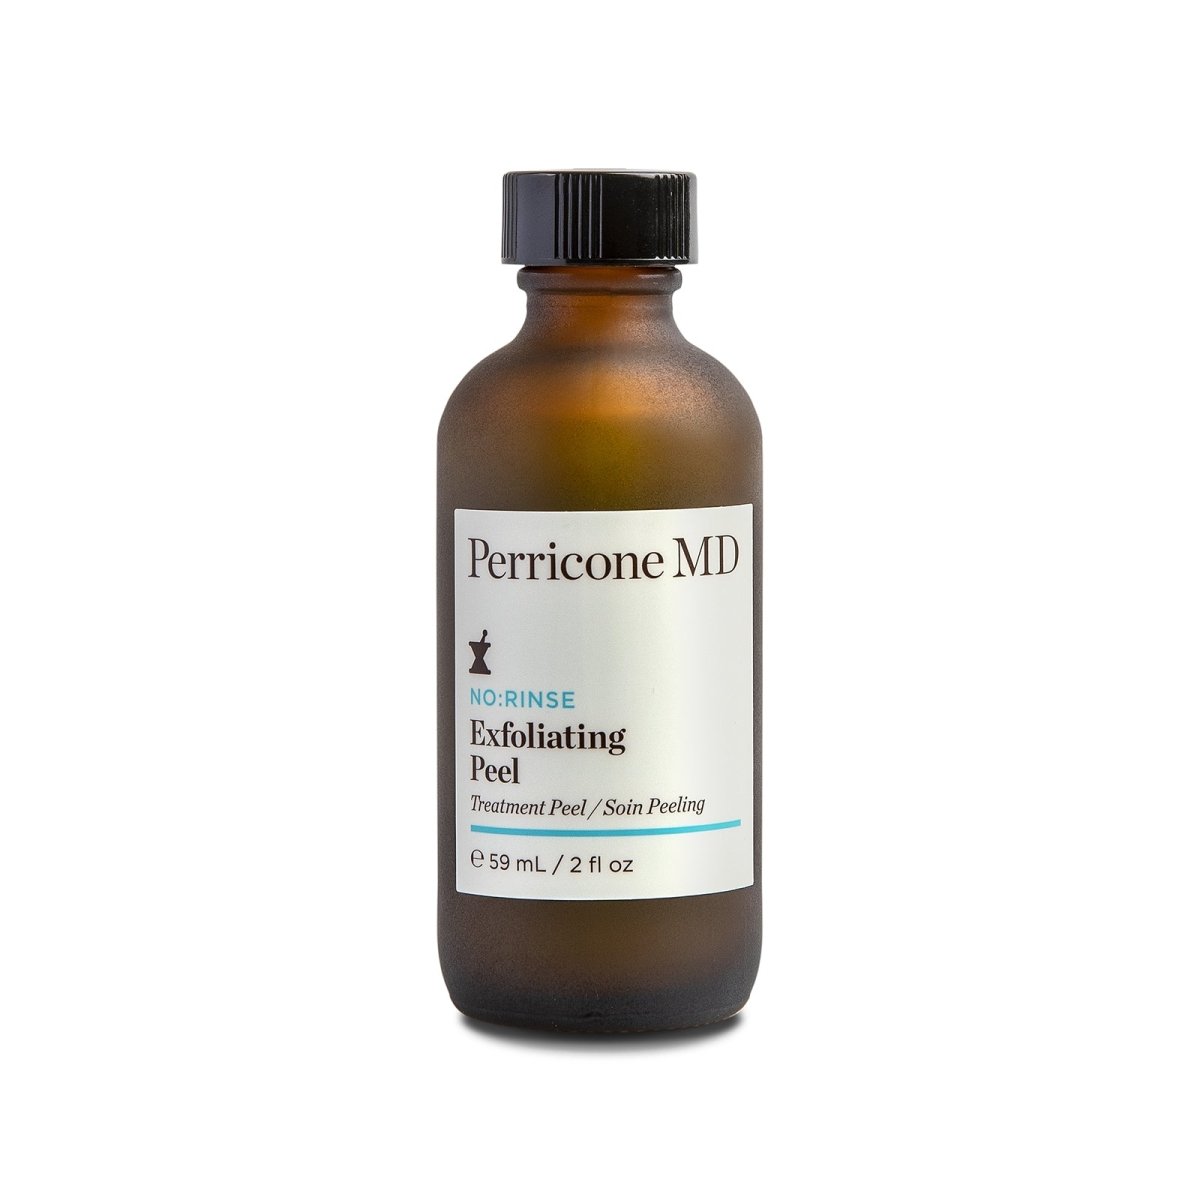 Perricone MD No:Rinse Exfoliating Peel - SkincareEssentials